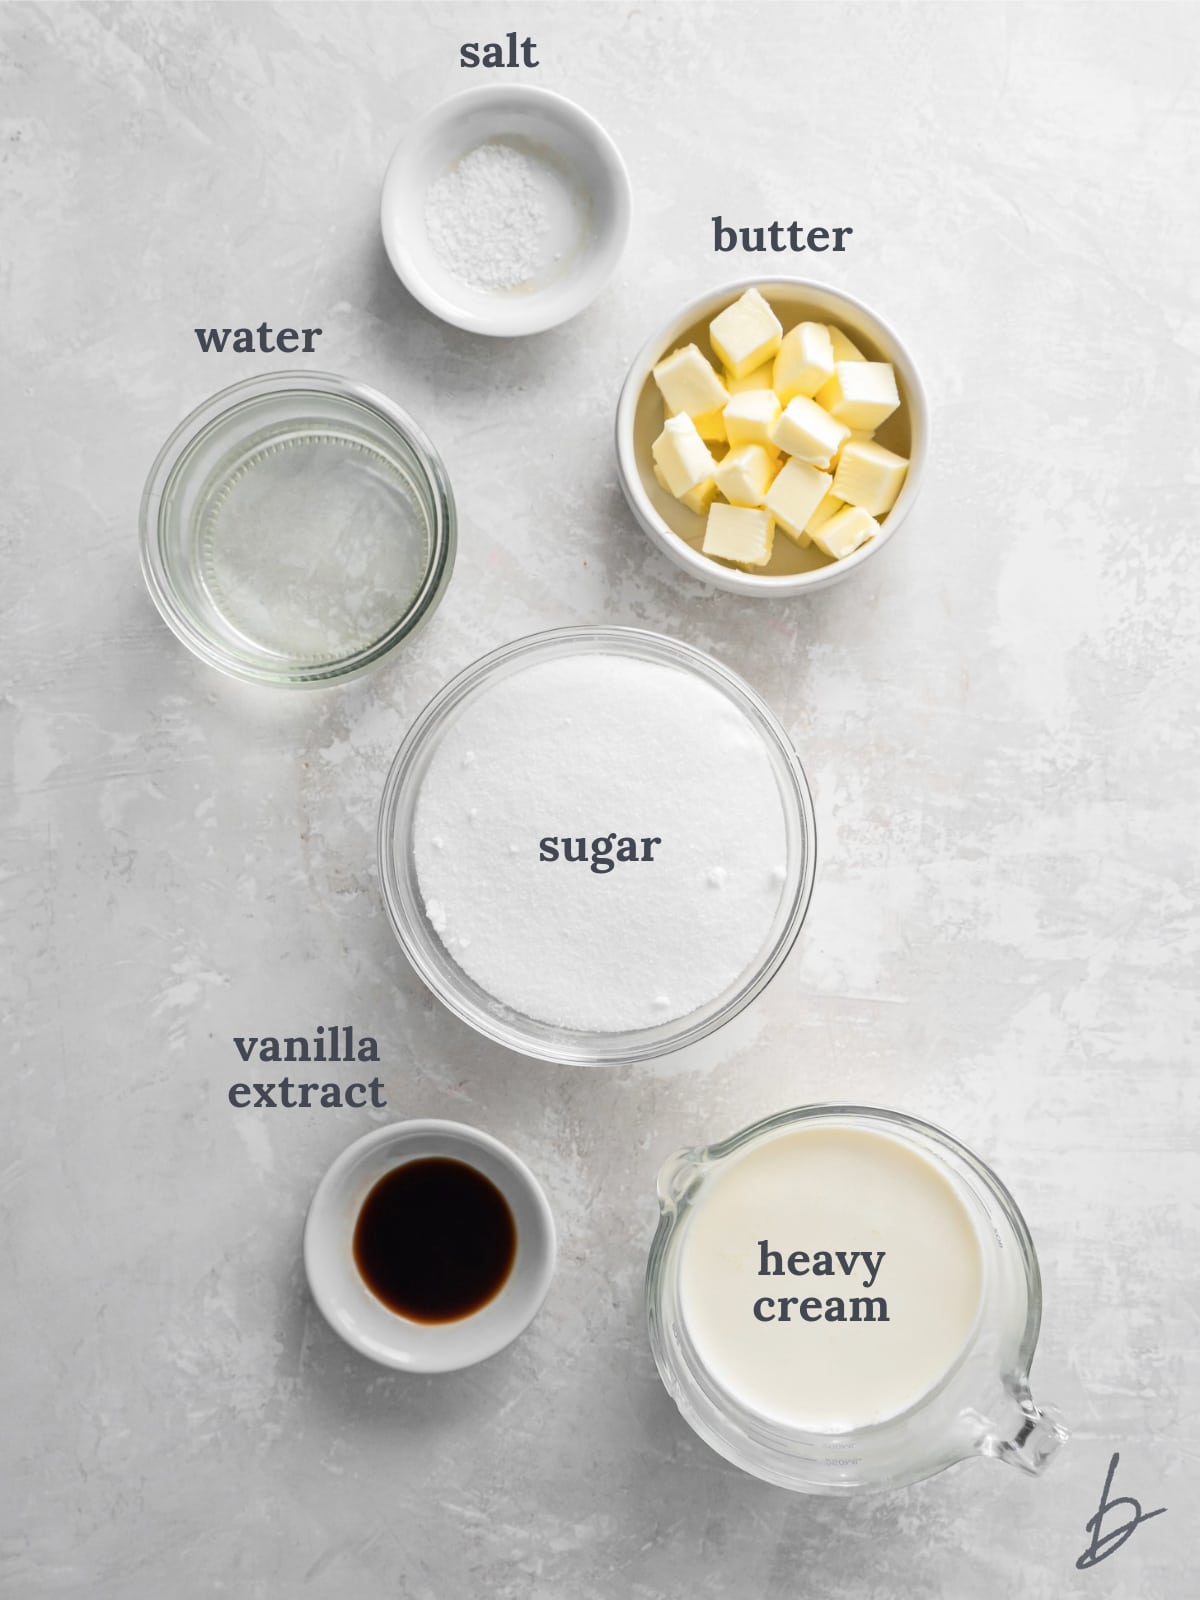 bowls of ingredients to make homemade caramel sauce.